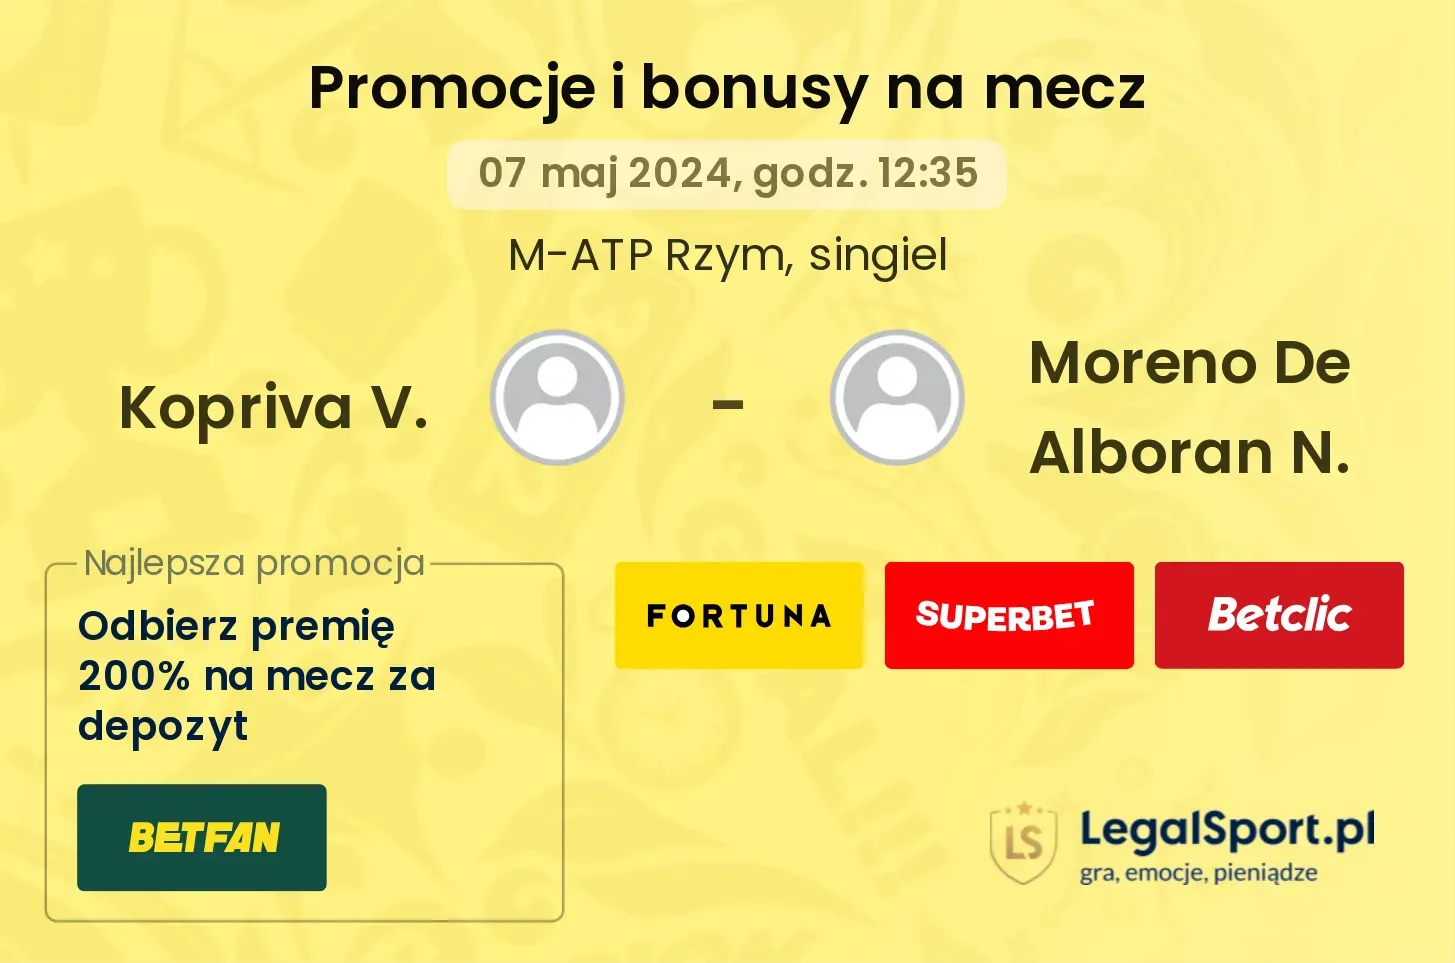 Kopriva V. - Moreno De Alboran N. promocje bonusy na mecz